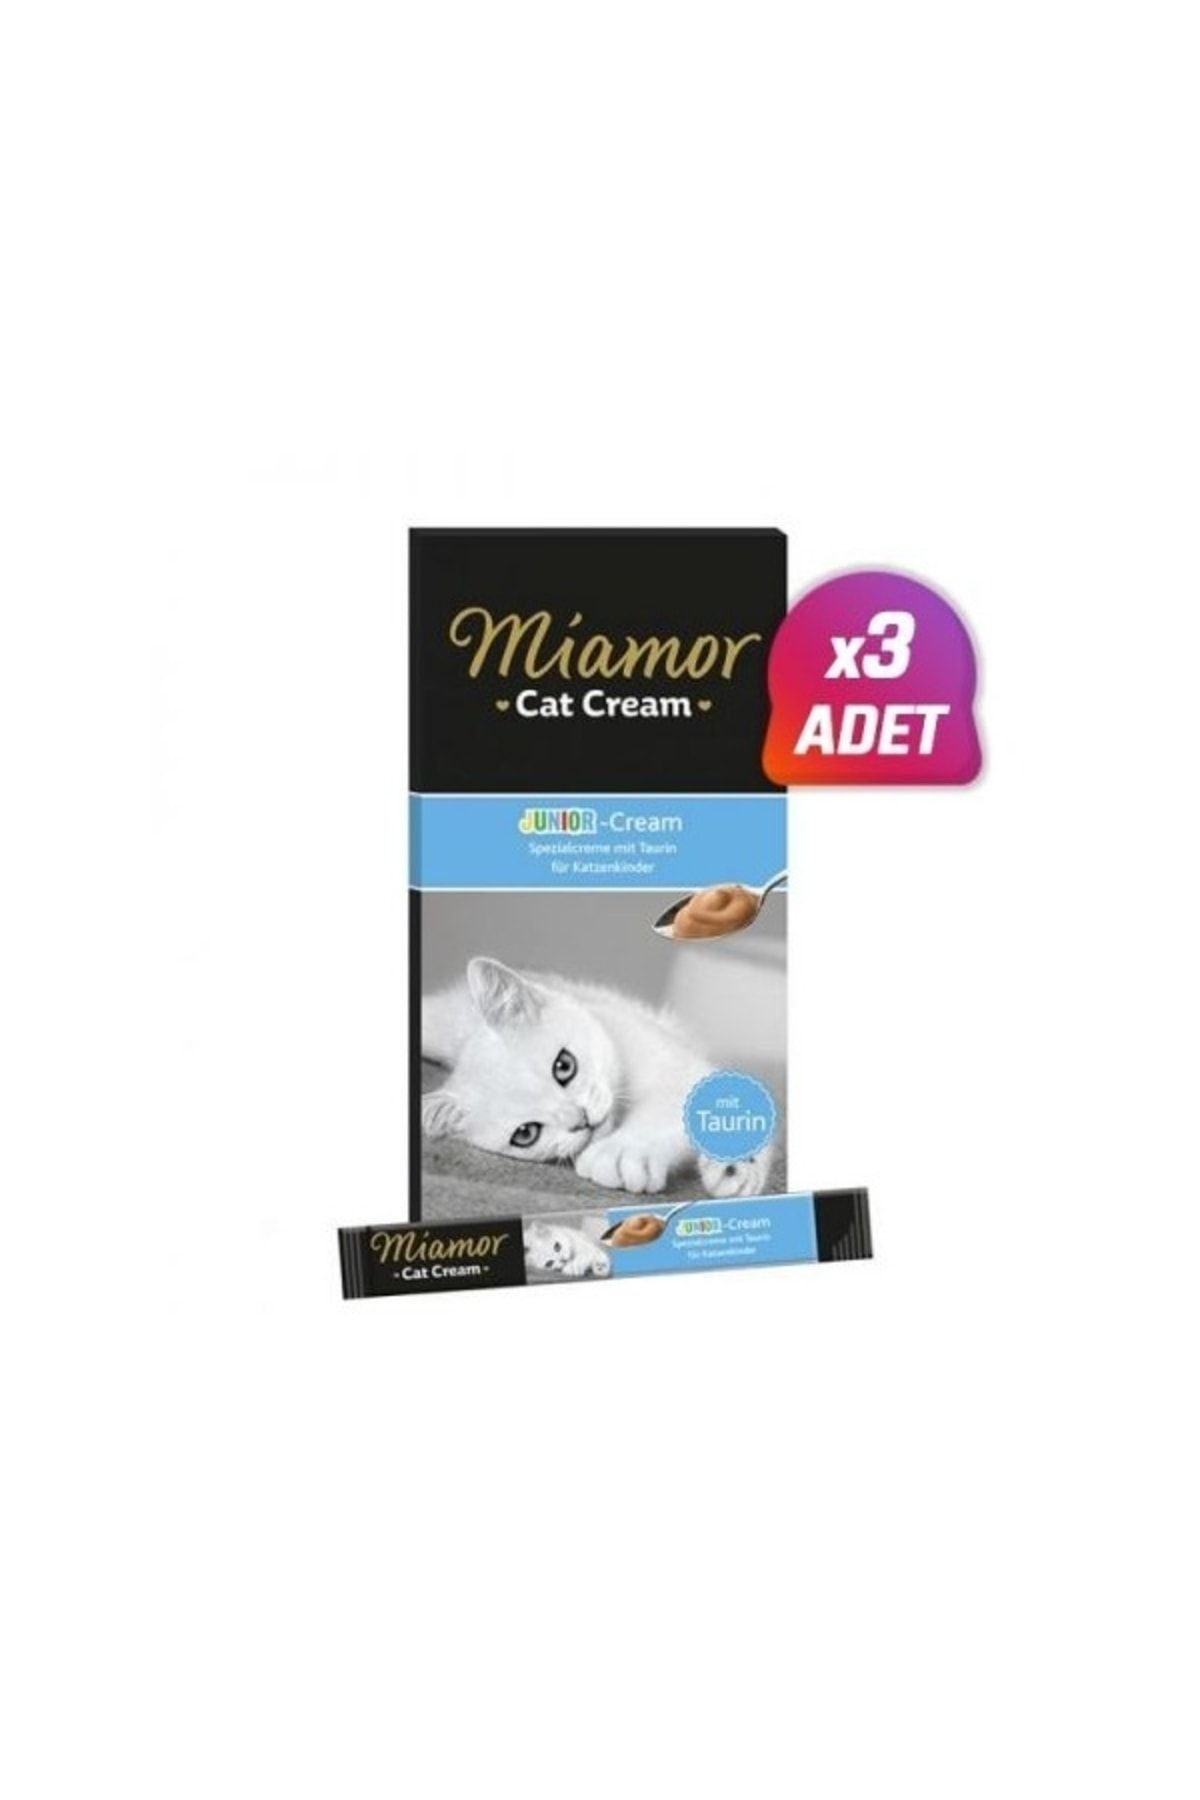 Miamor 3 Adet - Junior Cream Süt Kremalı Ek Besin Ve Yavru Kedi Ödülü 6x15 Gr